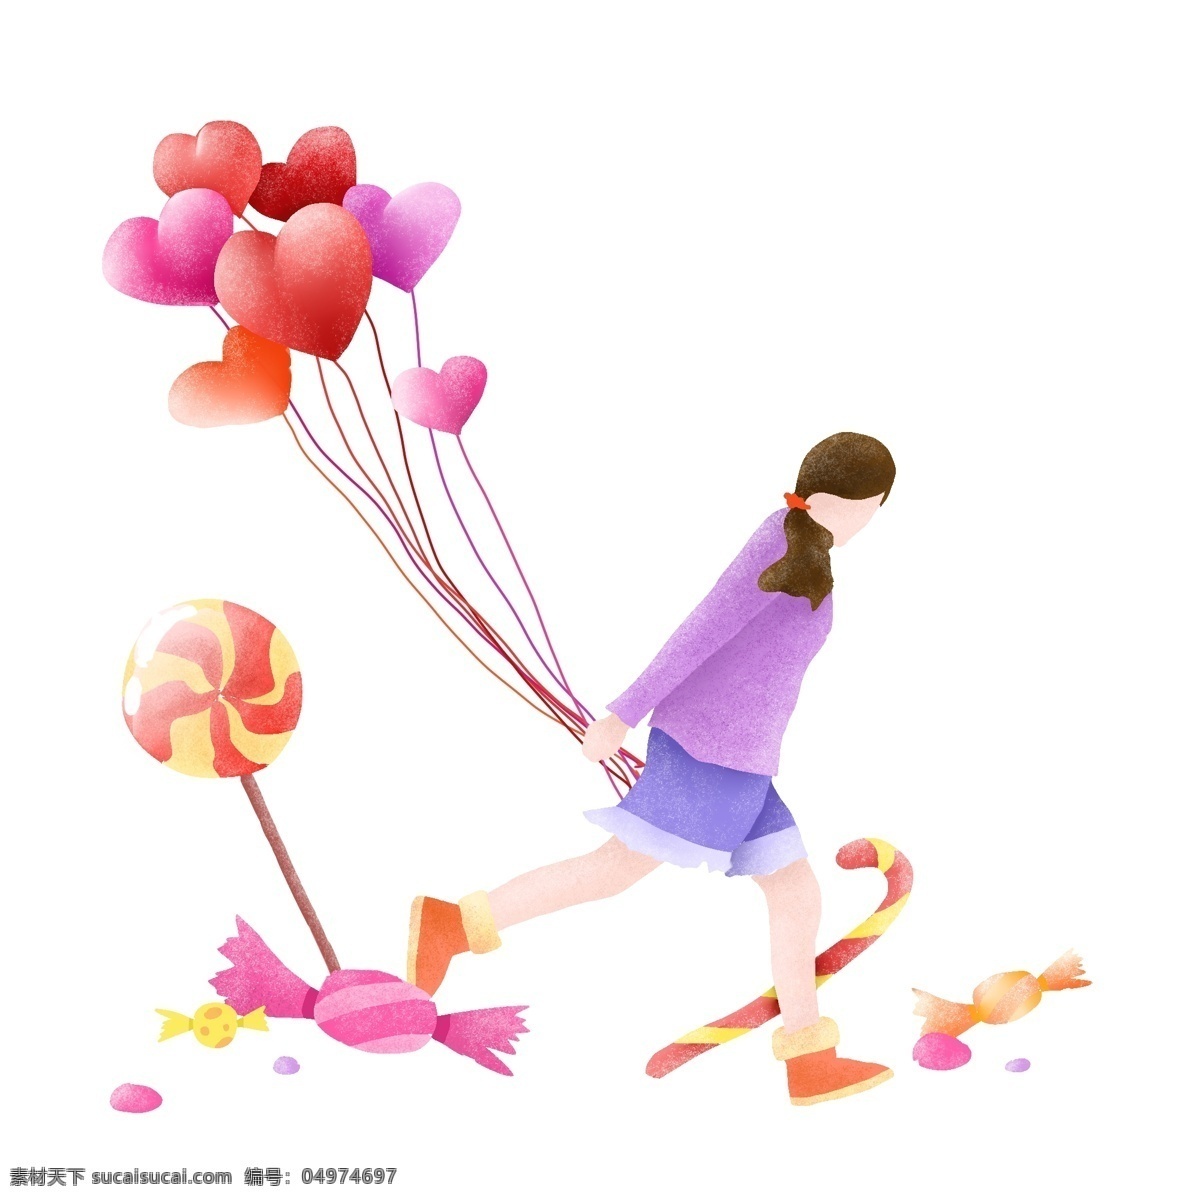 春季 漂亮 女孩 气球 春季人物插画 漂亮的小女孩 爱心气球 红色的棒棒糖 卡通人物 糖果插画